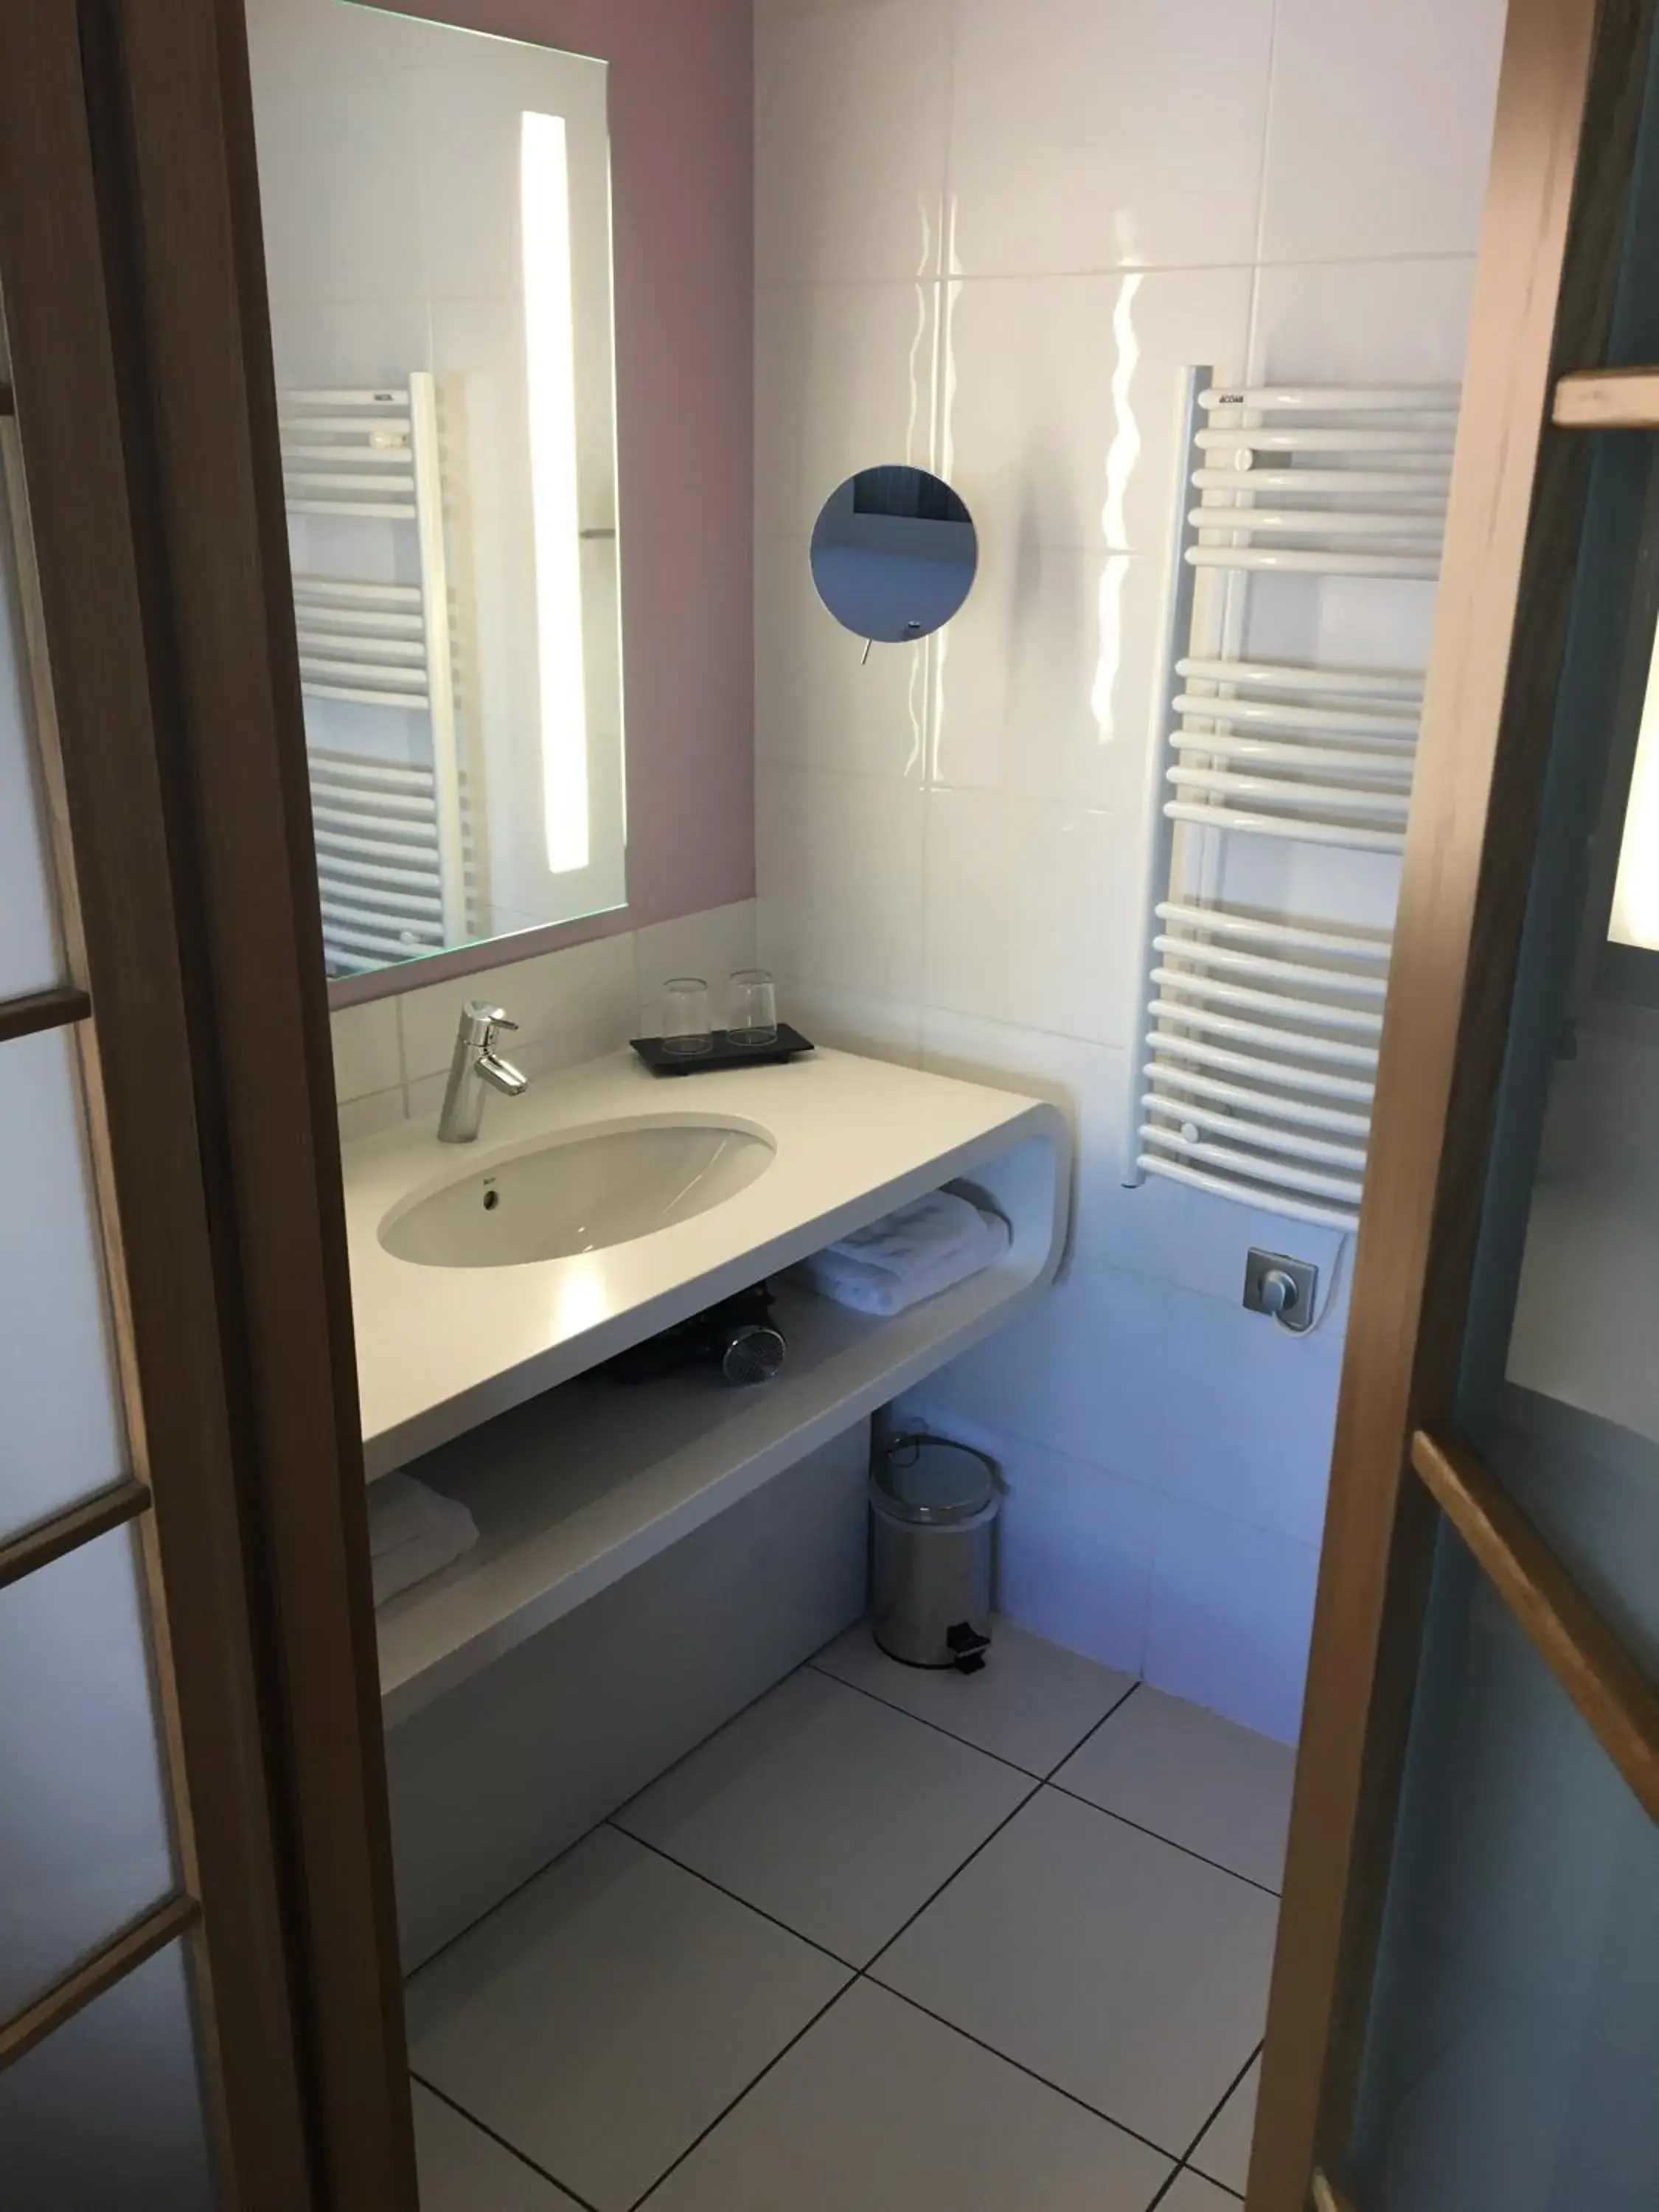 Bathroom in Best Western Plus Hotel Le Rhenan